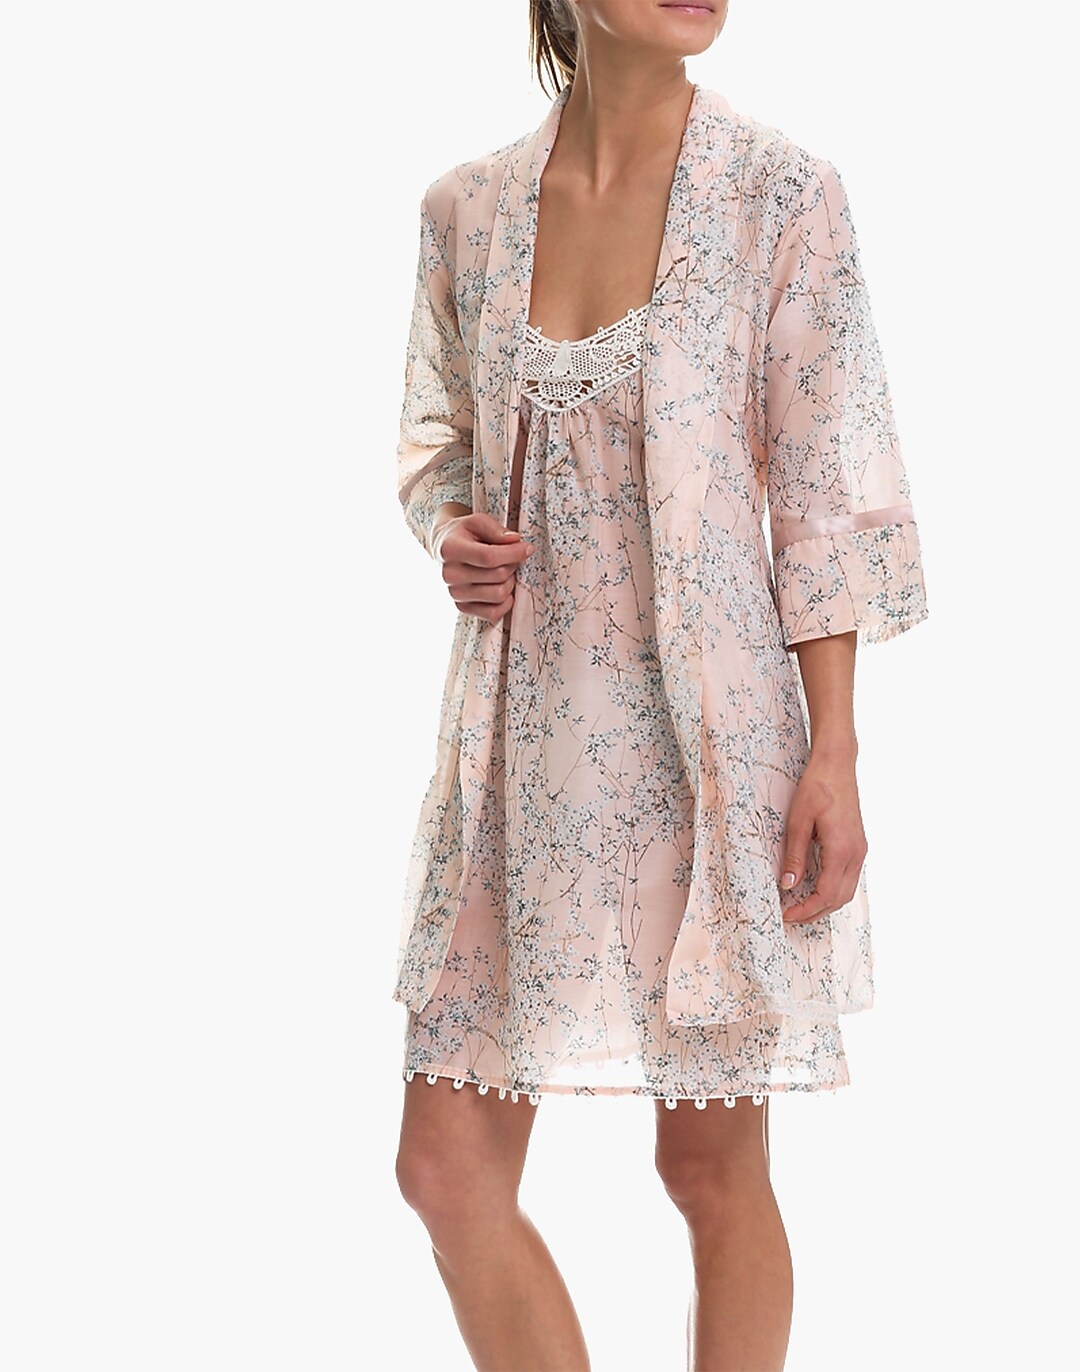 Papinelle Sleepwear™ Cherry Blossom Peach Nightie